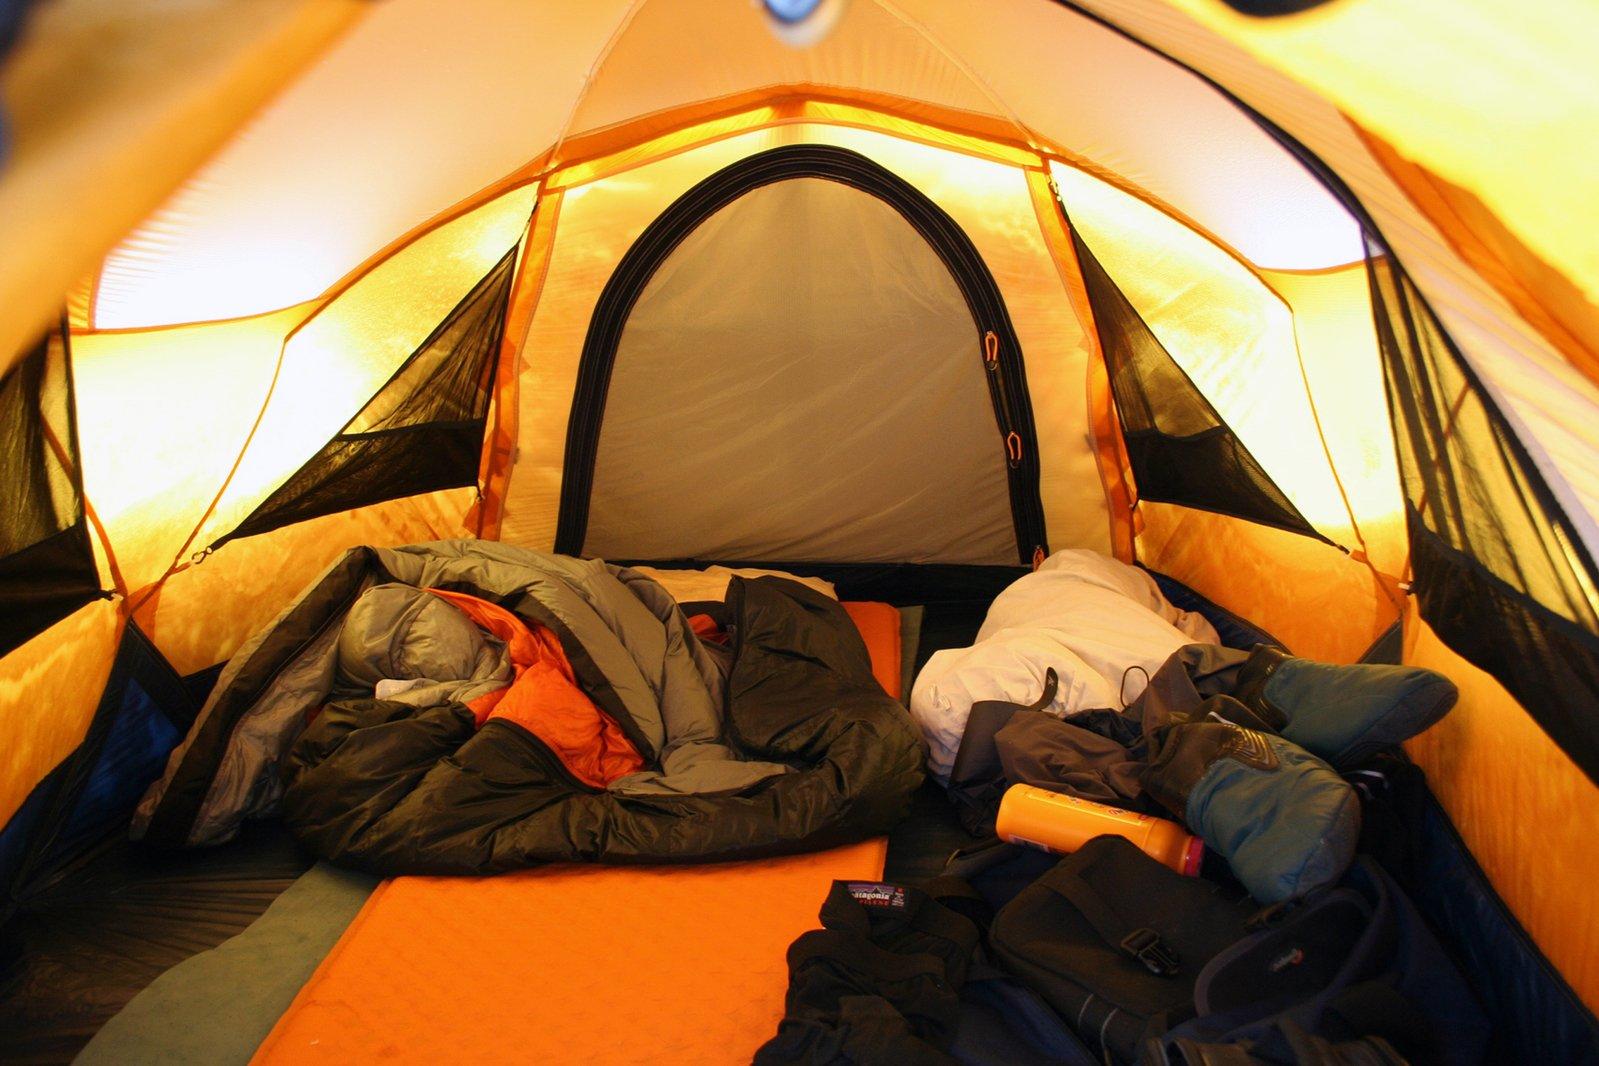 Ночная гостья пришла в палатку